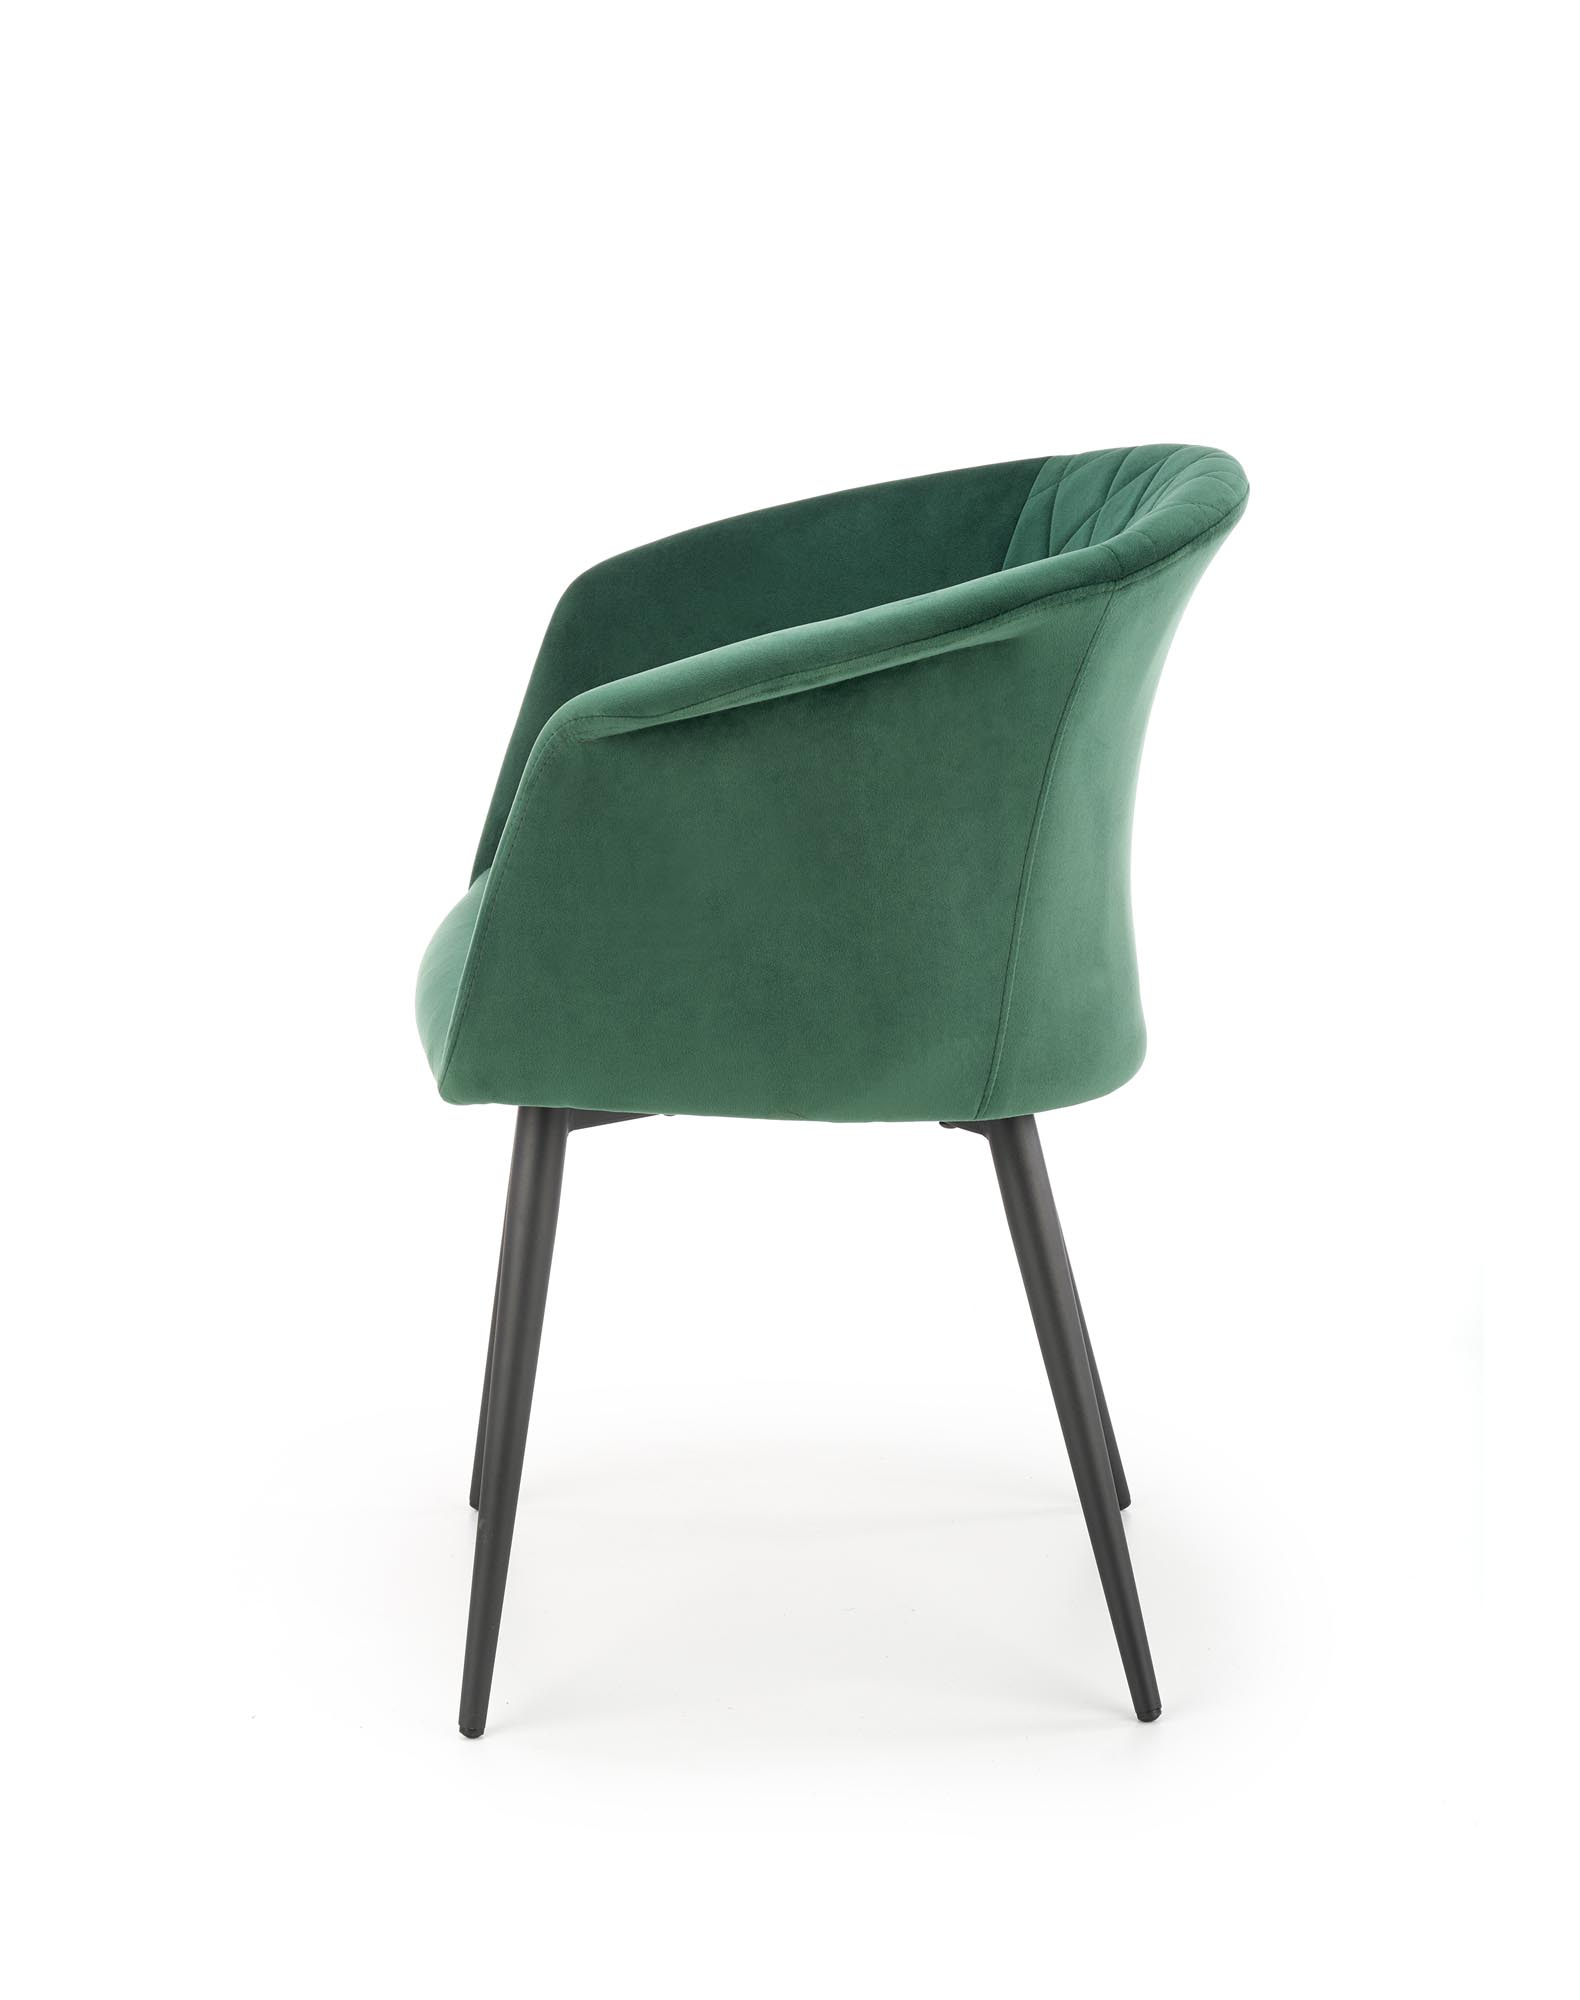 K421 szék - sötétzöld k421 Židle tmavý Zelený